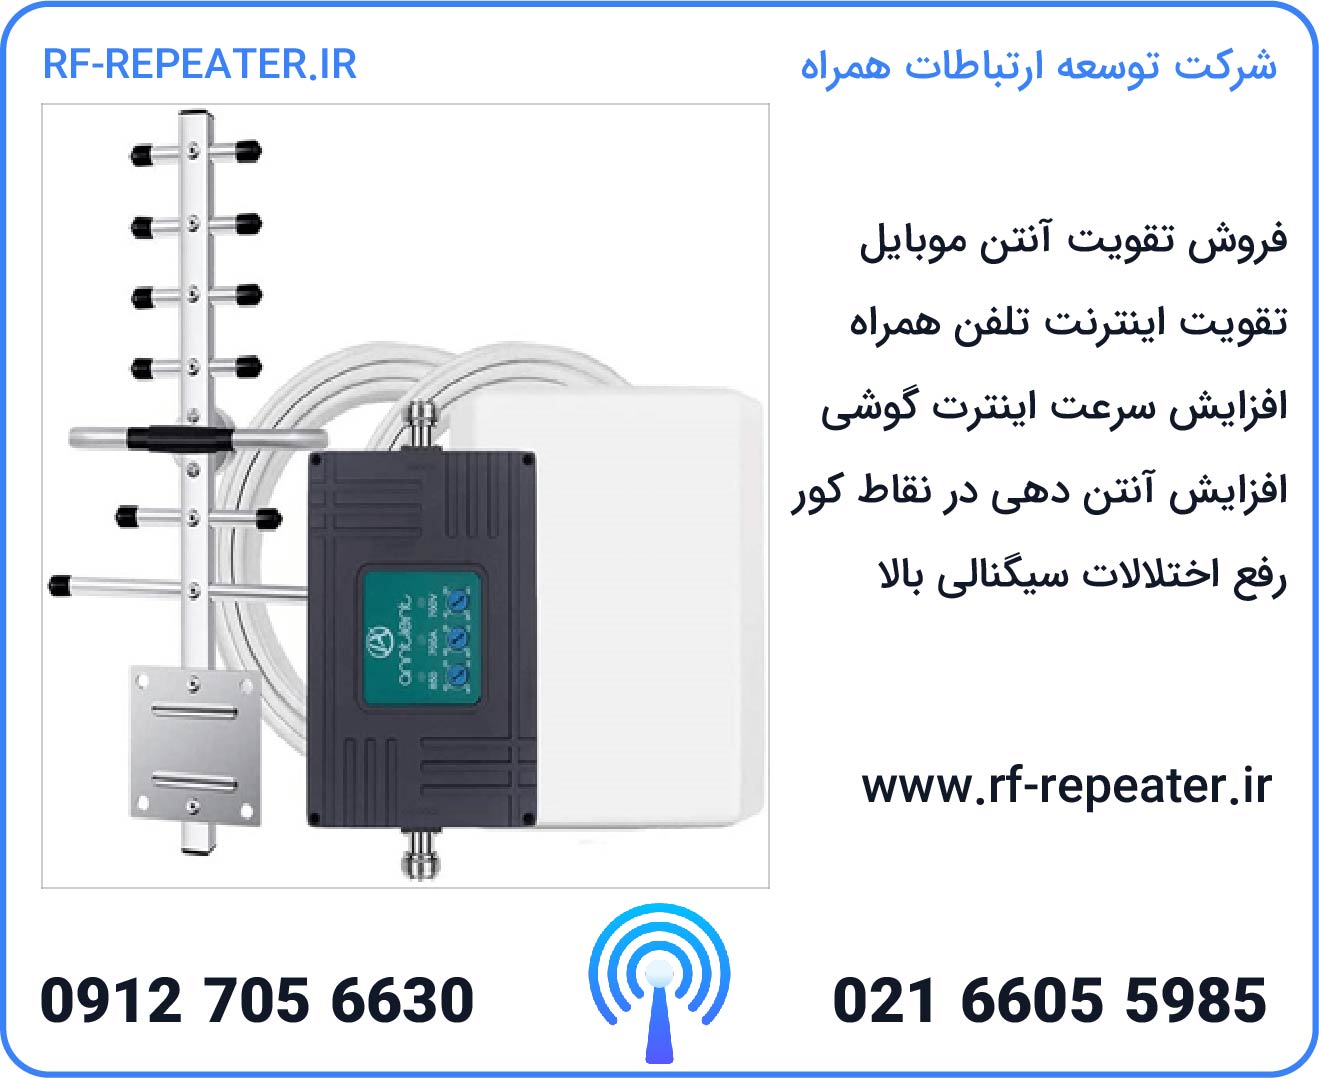 تقویت سیگنال موبایل | تقویت کننده آنتن موبایل | rf-repeater.ir